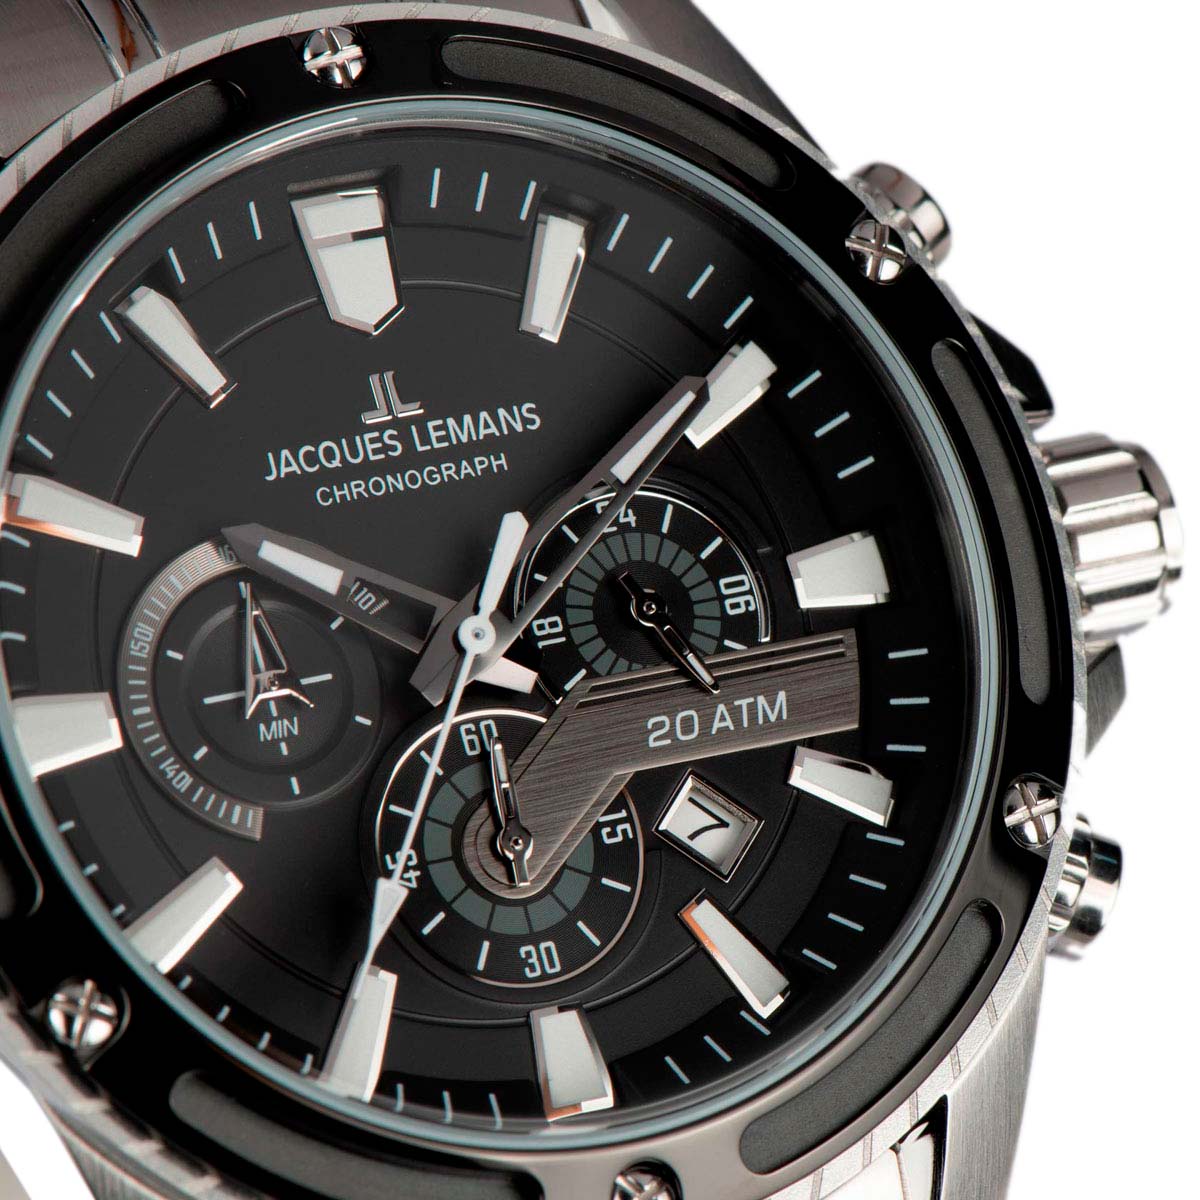 Наручные часы Jacques Lemans инструкция, — фото, цене, купить описание в AllTime.ru характеристики, лучшей интернет-магазине по 1-2141E